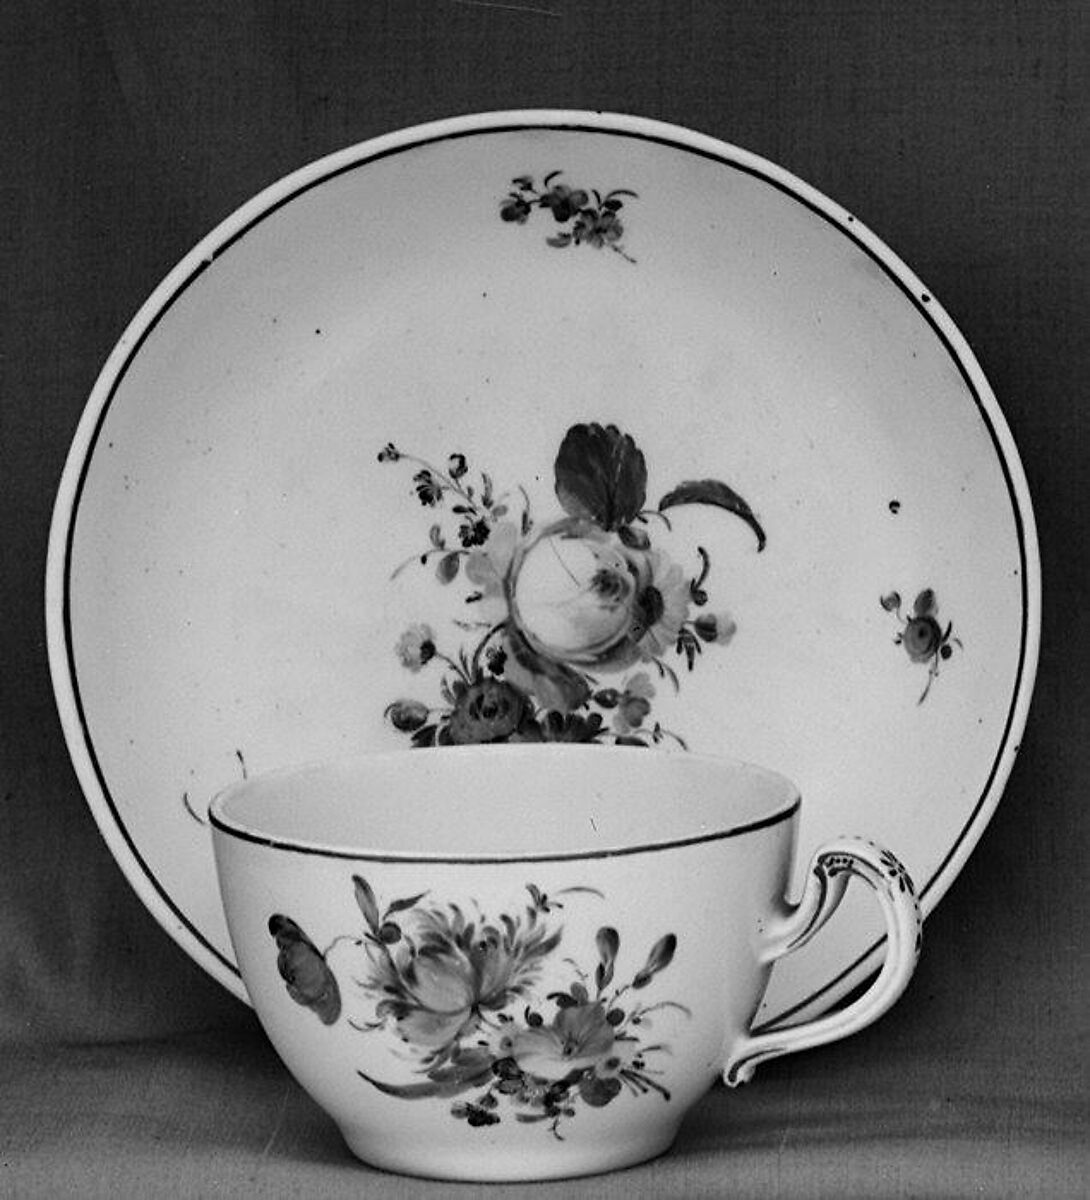 Cup and saucer, The Hague, Hard-paste porcelain, Dutch, The Hague 